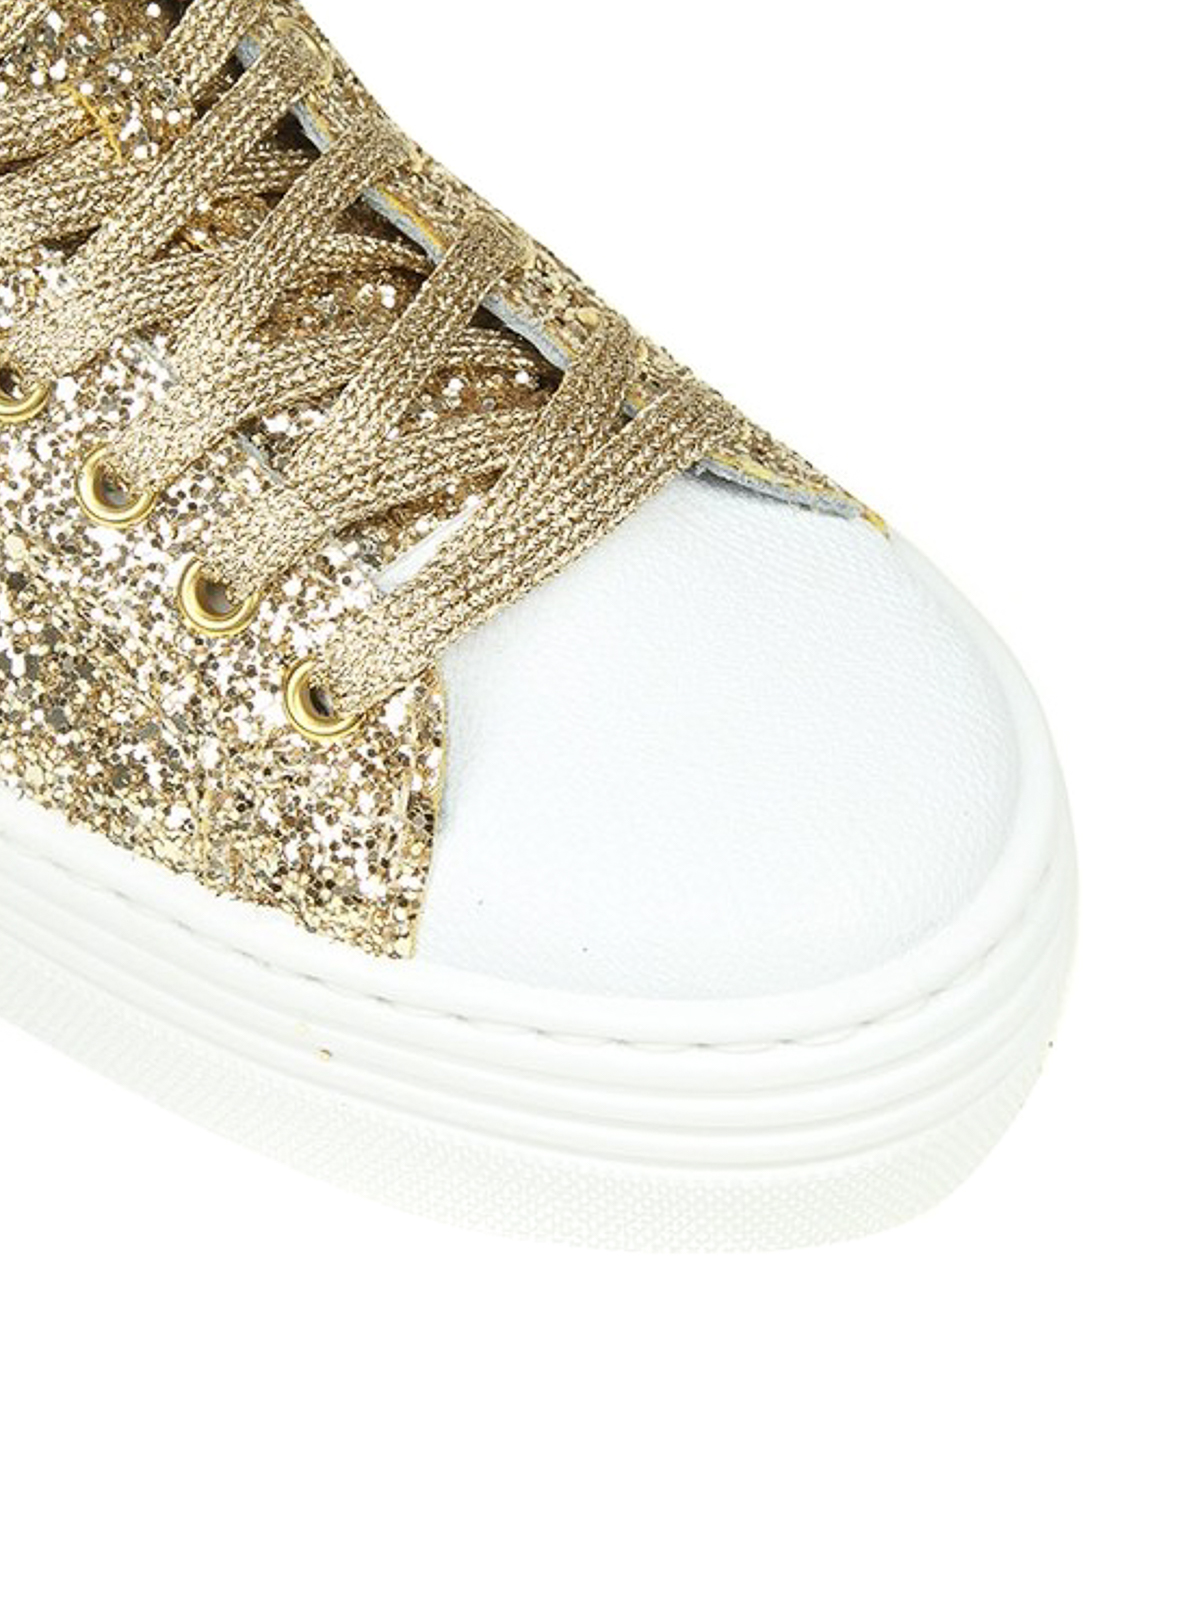 Chiara Ferragni - Sneaker Platform in glitter oro - sneakers - CF2080